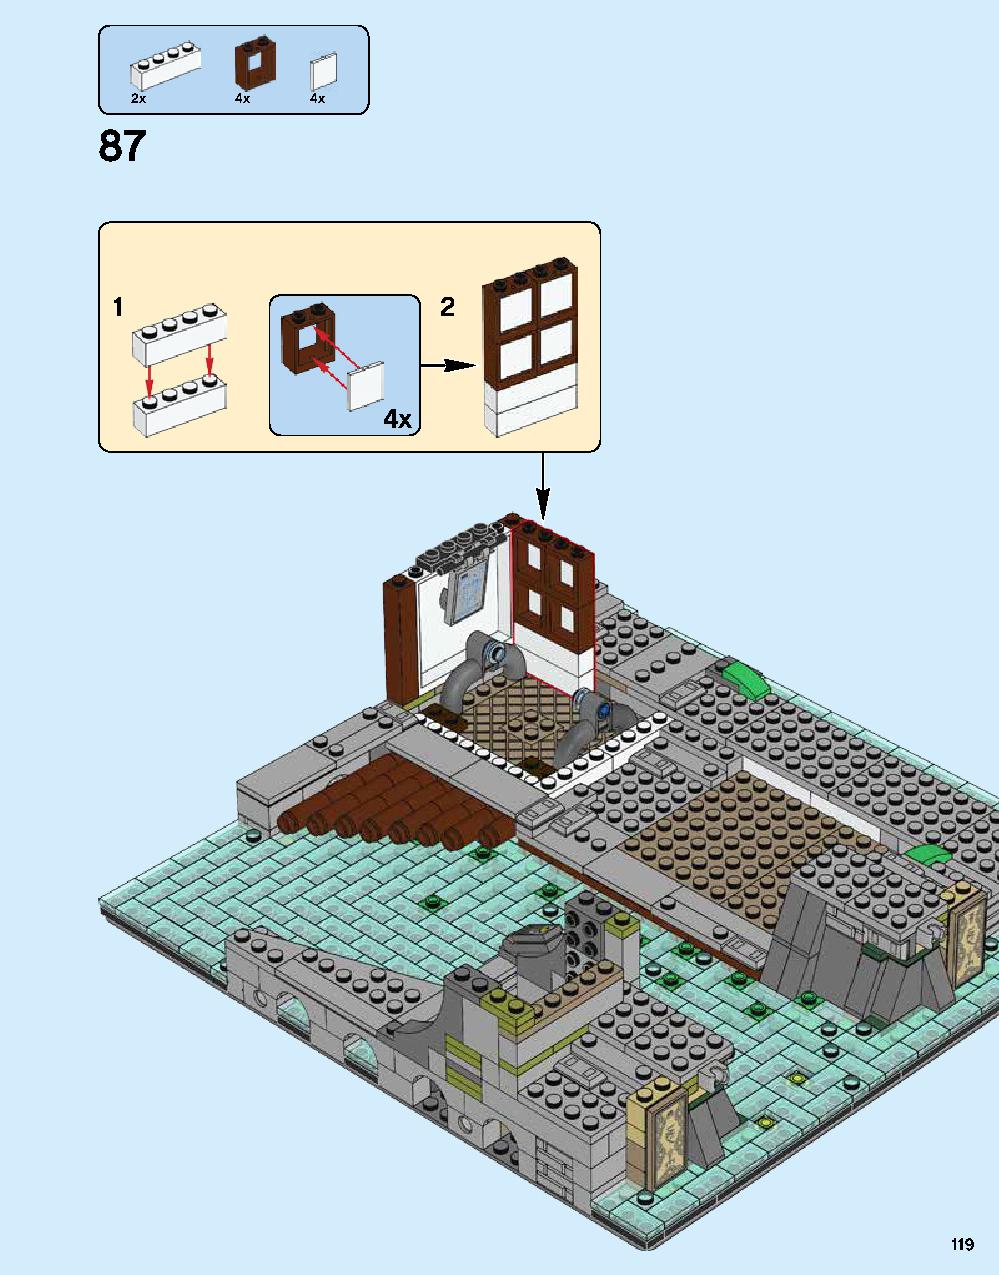 ニンジャゴー シティ 70620 レゴの商品情報 レゴの説明書・組立方法 119 page